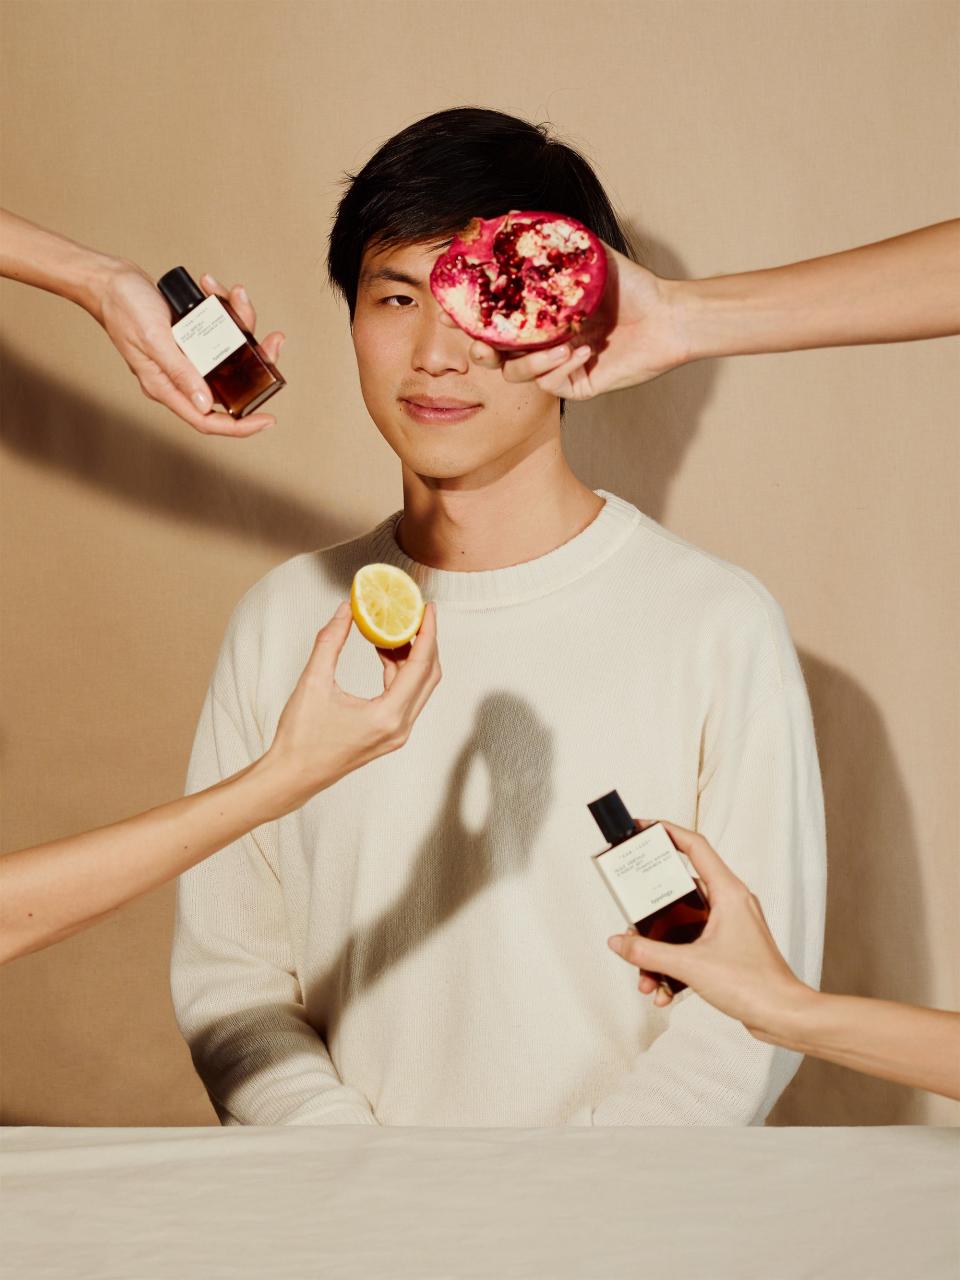 Gemeinsam mit Gesundheits- und Hautpflegeexpert*innen revolutioniert Gründer Ning Li die Beautybranche und setzt sich inbesondere dafür ein, nachhaltige Produkte aus 100% natürlichen Inhaltsstoffen herzustellen. (Bild: Typology)